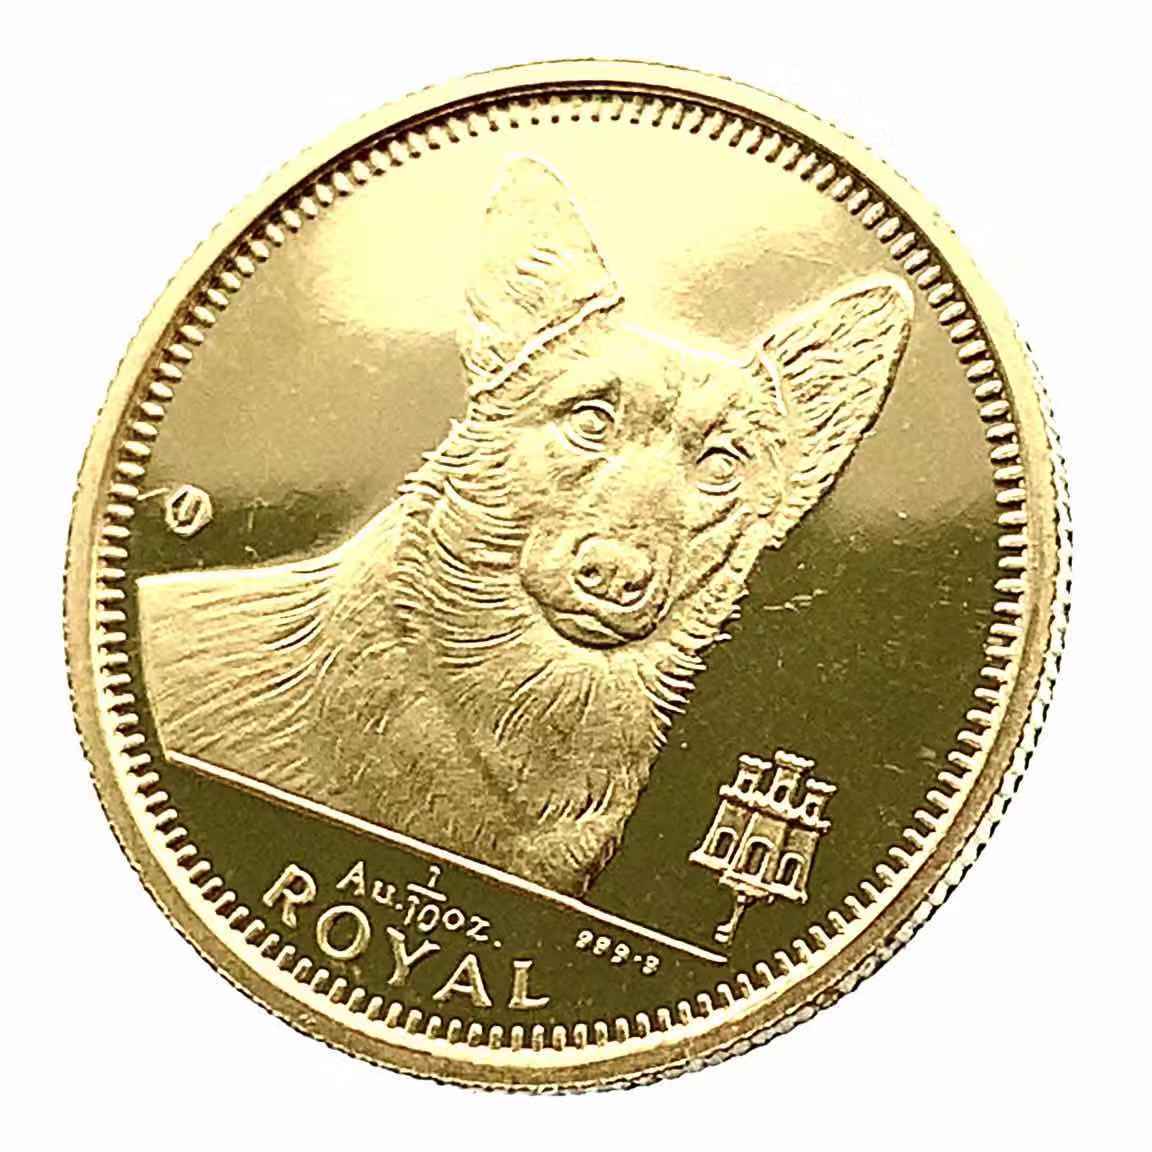  犬金貨 ジブラルタル エリザベス女王二世 1/10オンス 1991年 24金 純金 3.1g イエローゴールド コイン GOLD コレクション 美品_画像1